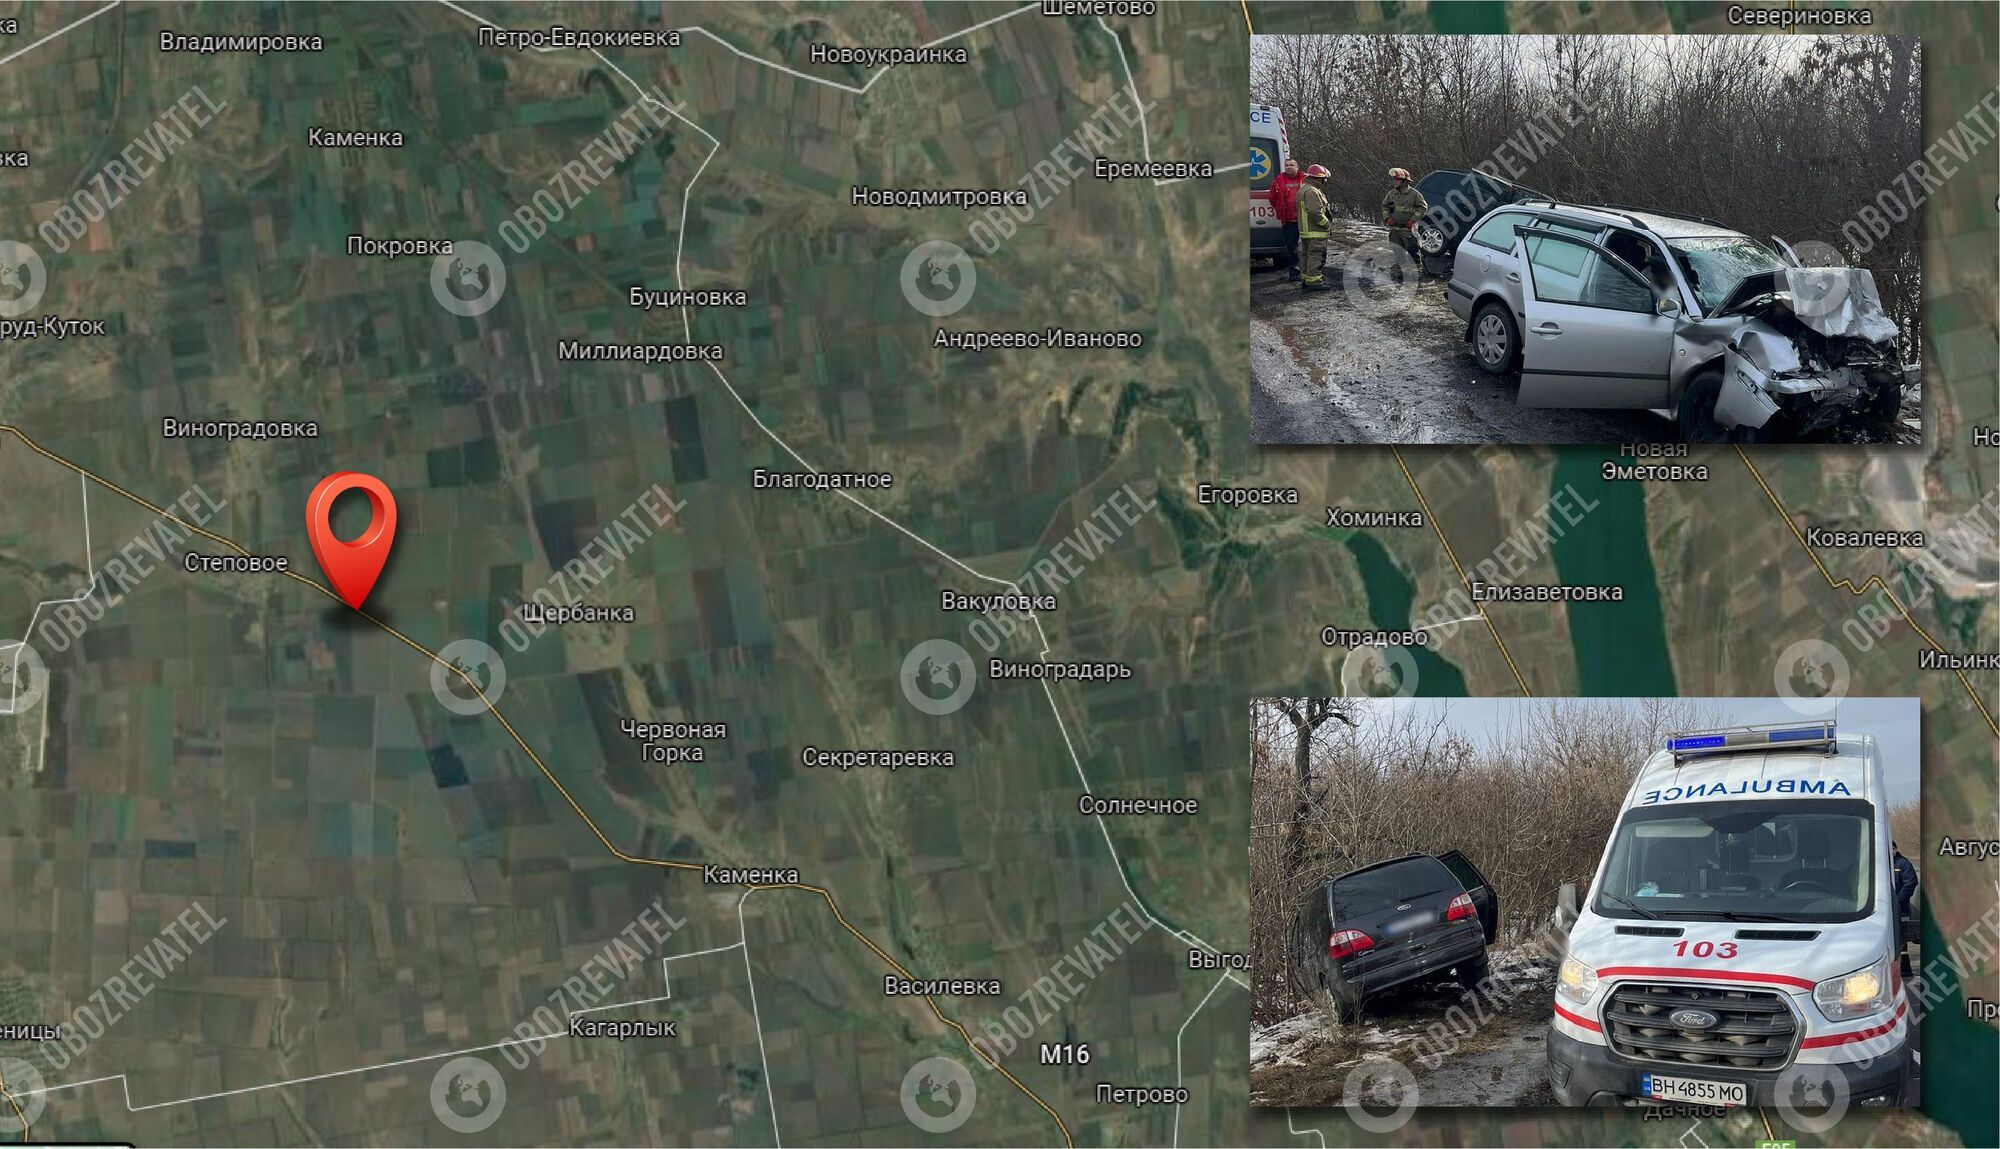 ДТП произошло между селами Каменка и Щербанка